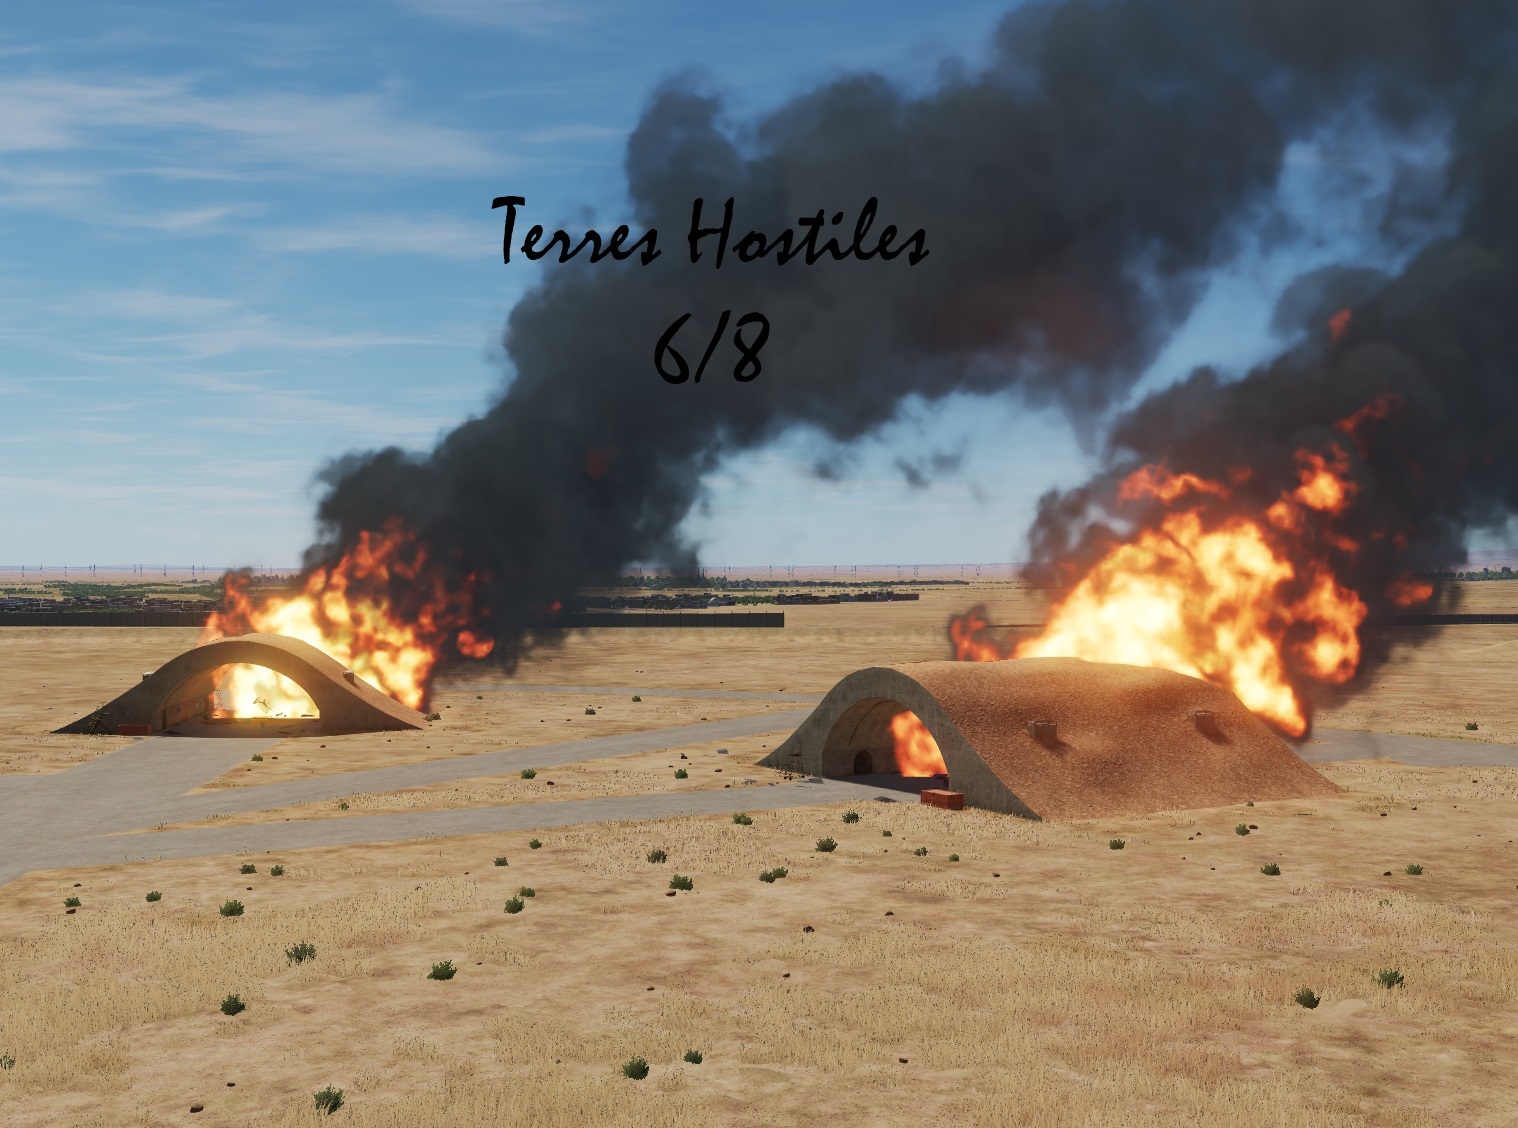 Terres Hostiles v1.0 6/8